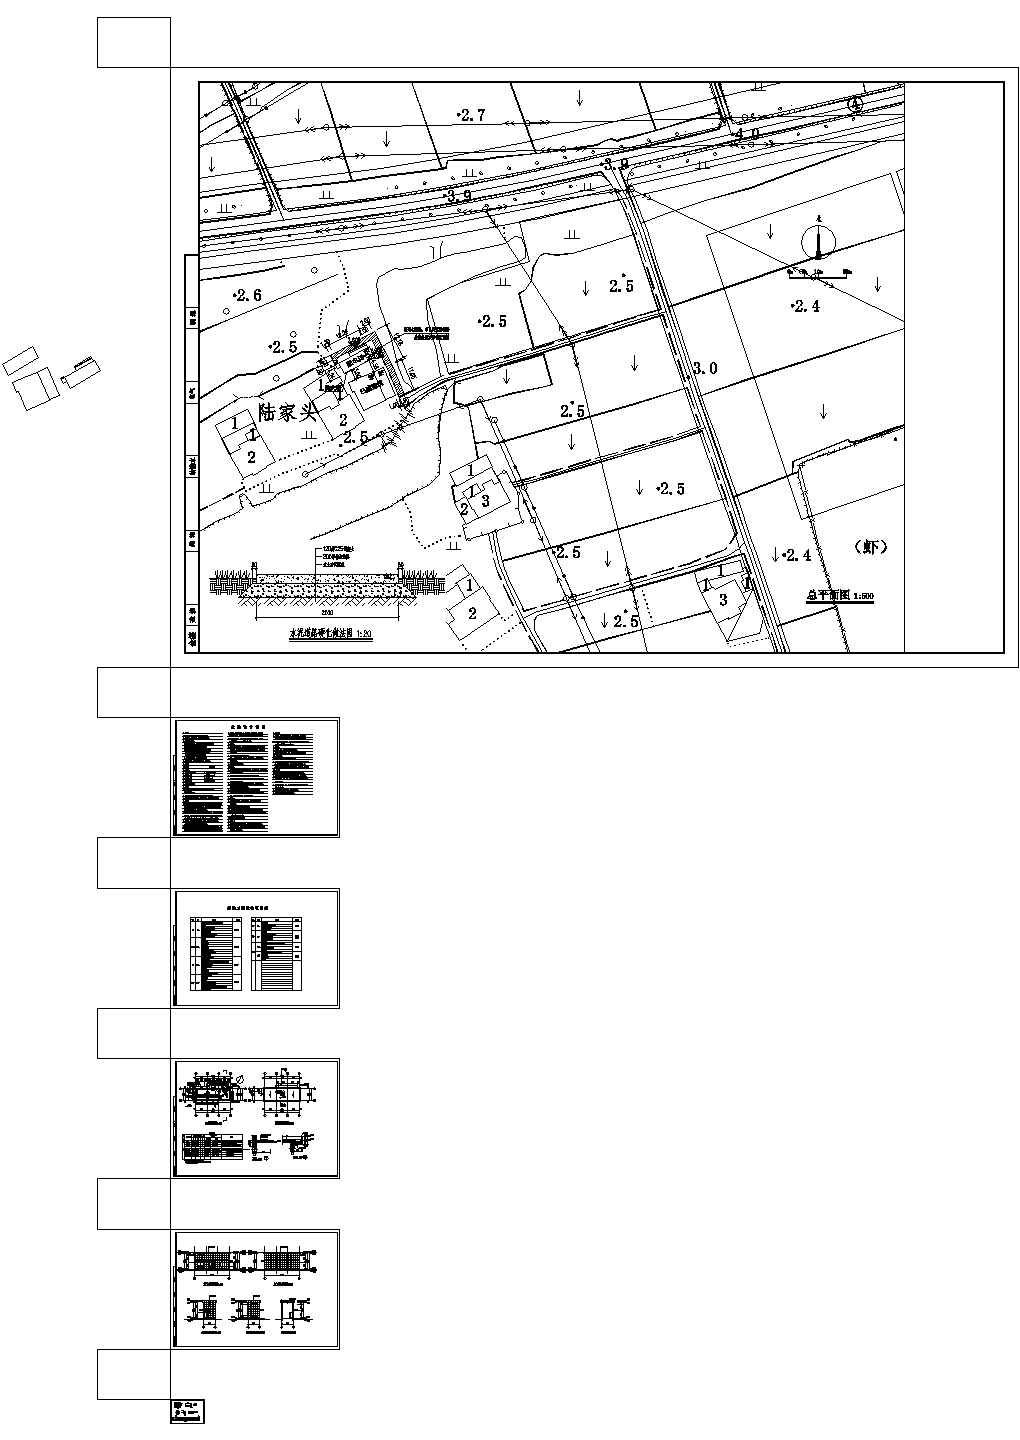 梅园乡村综合体附属工程--建筑设计CAD图纸